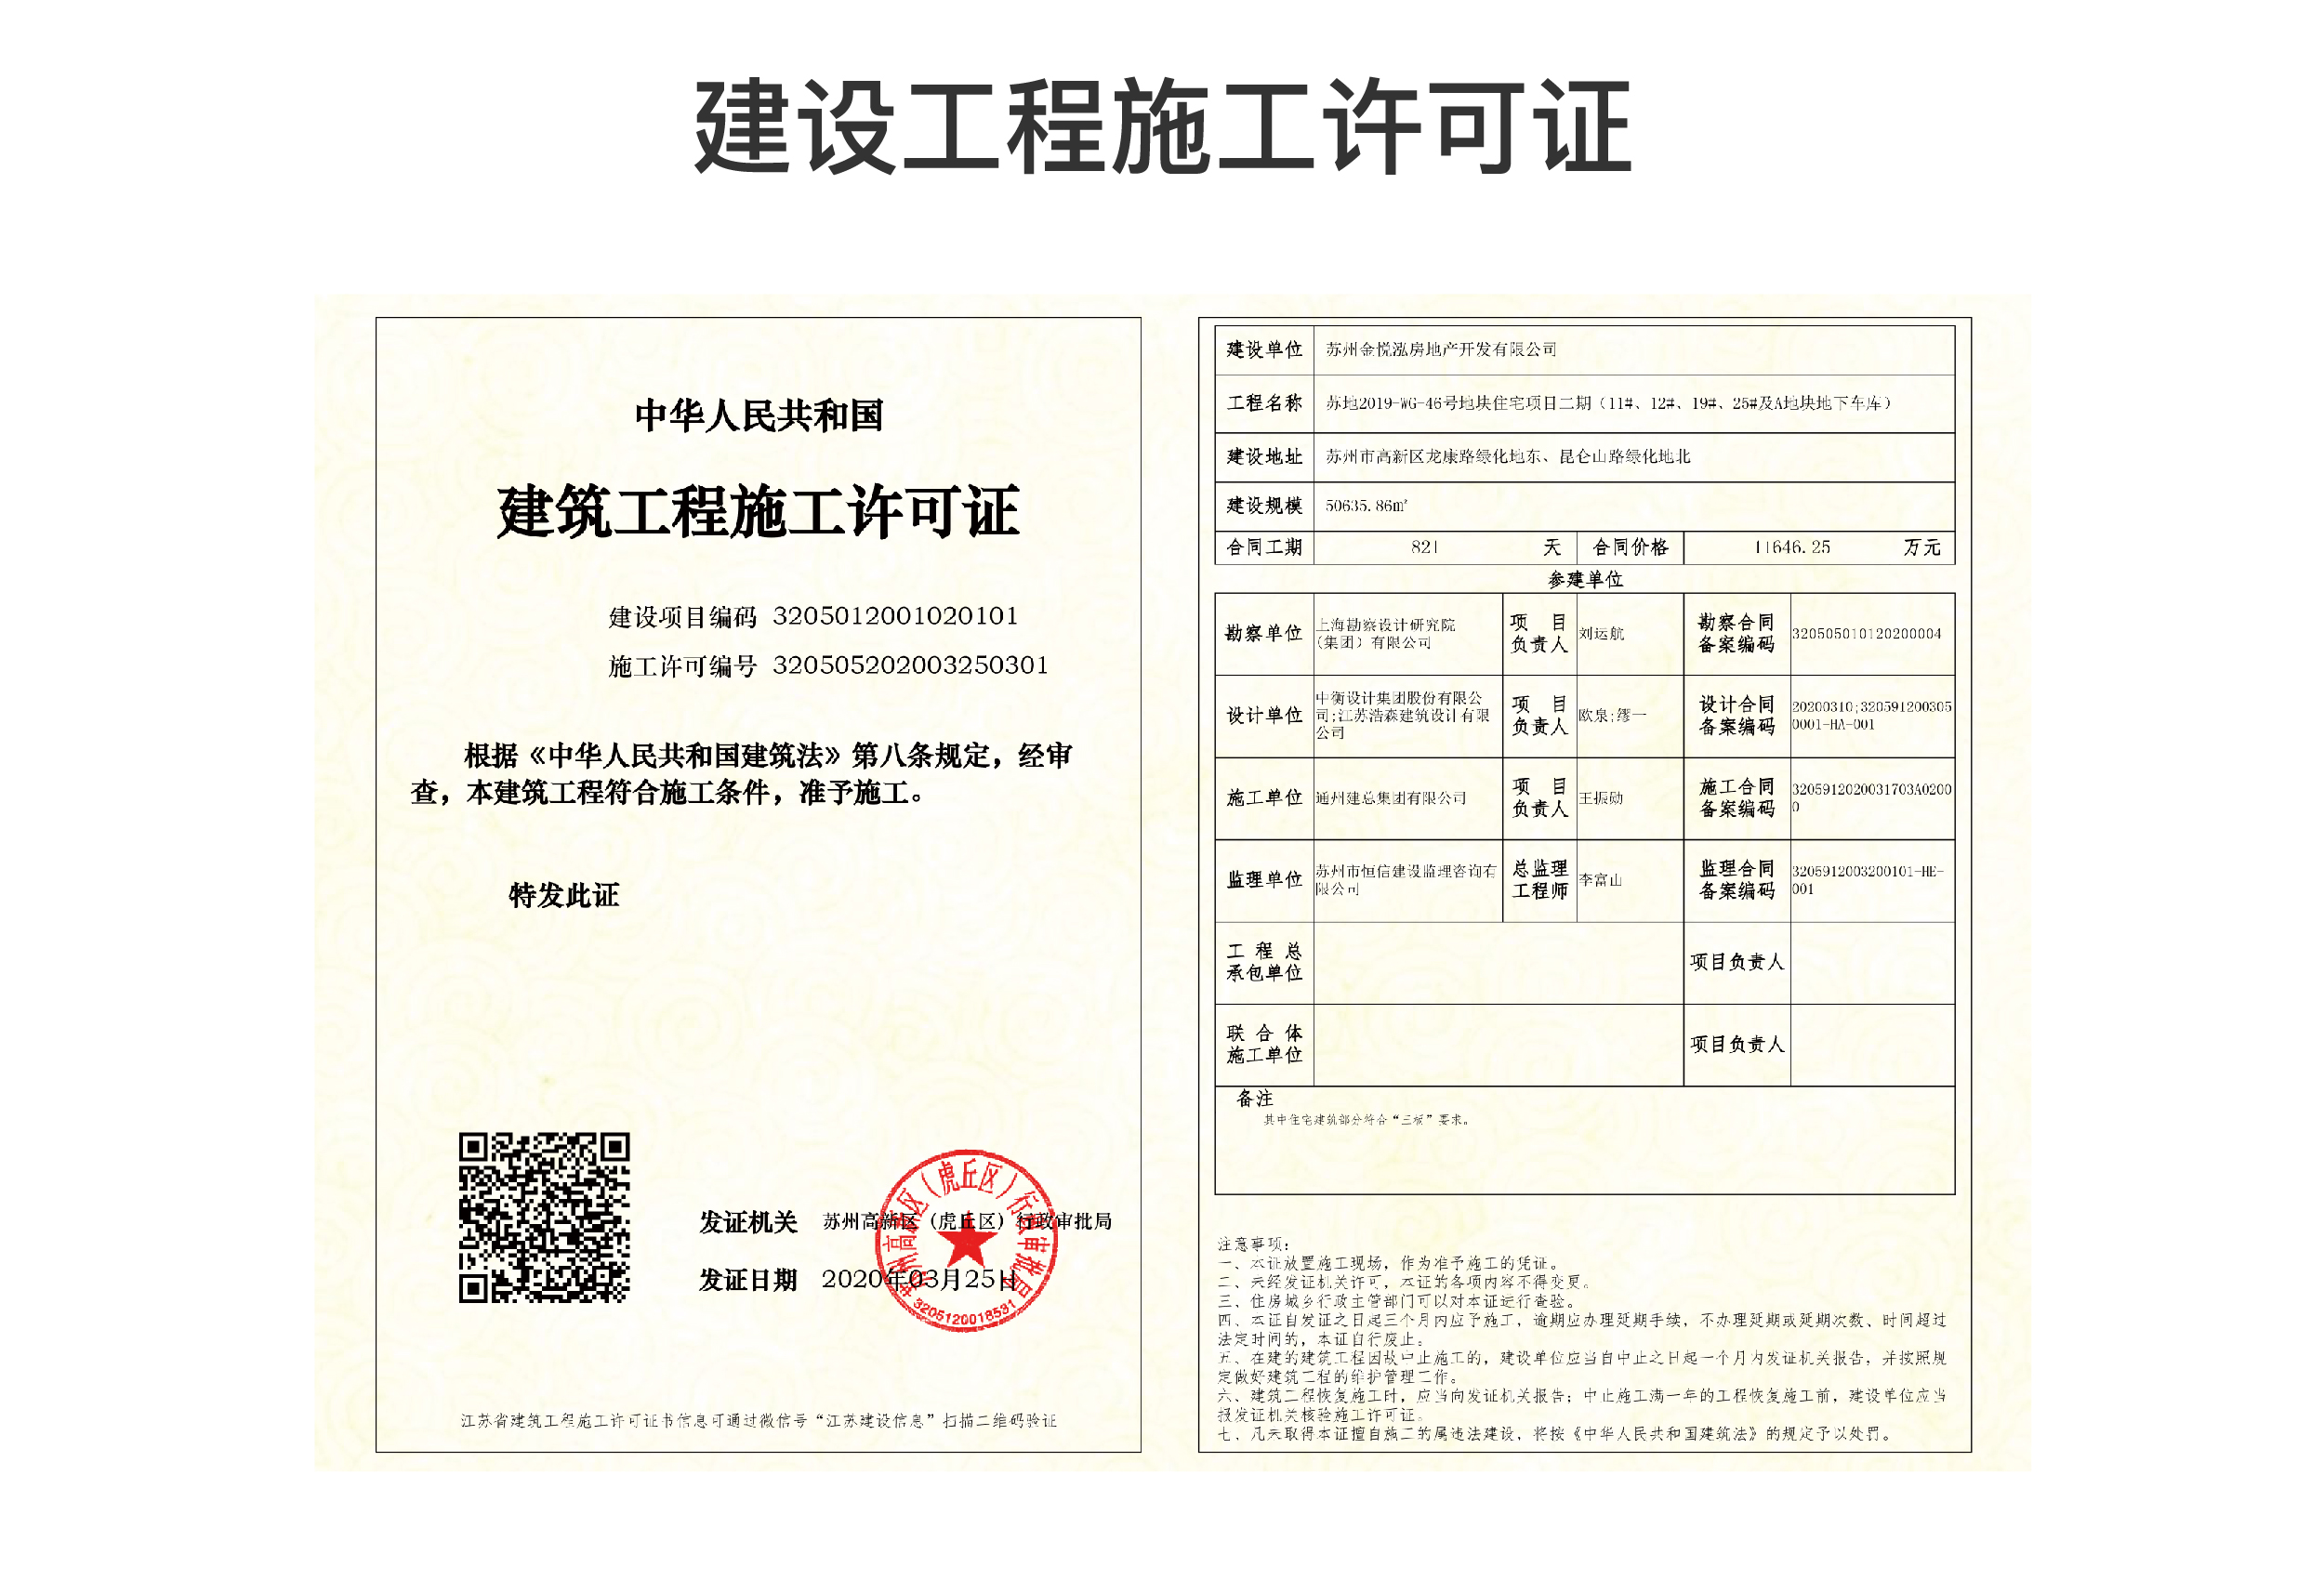 广州市施工许可证图片